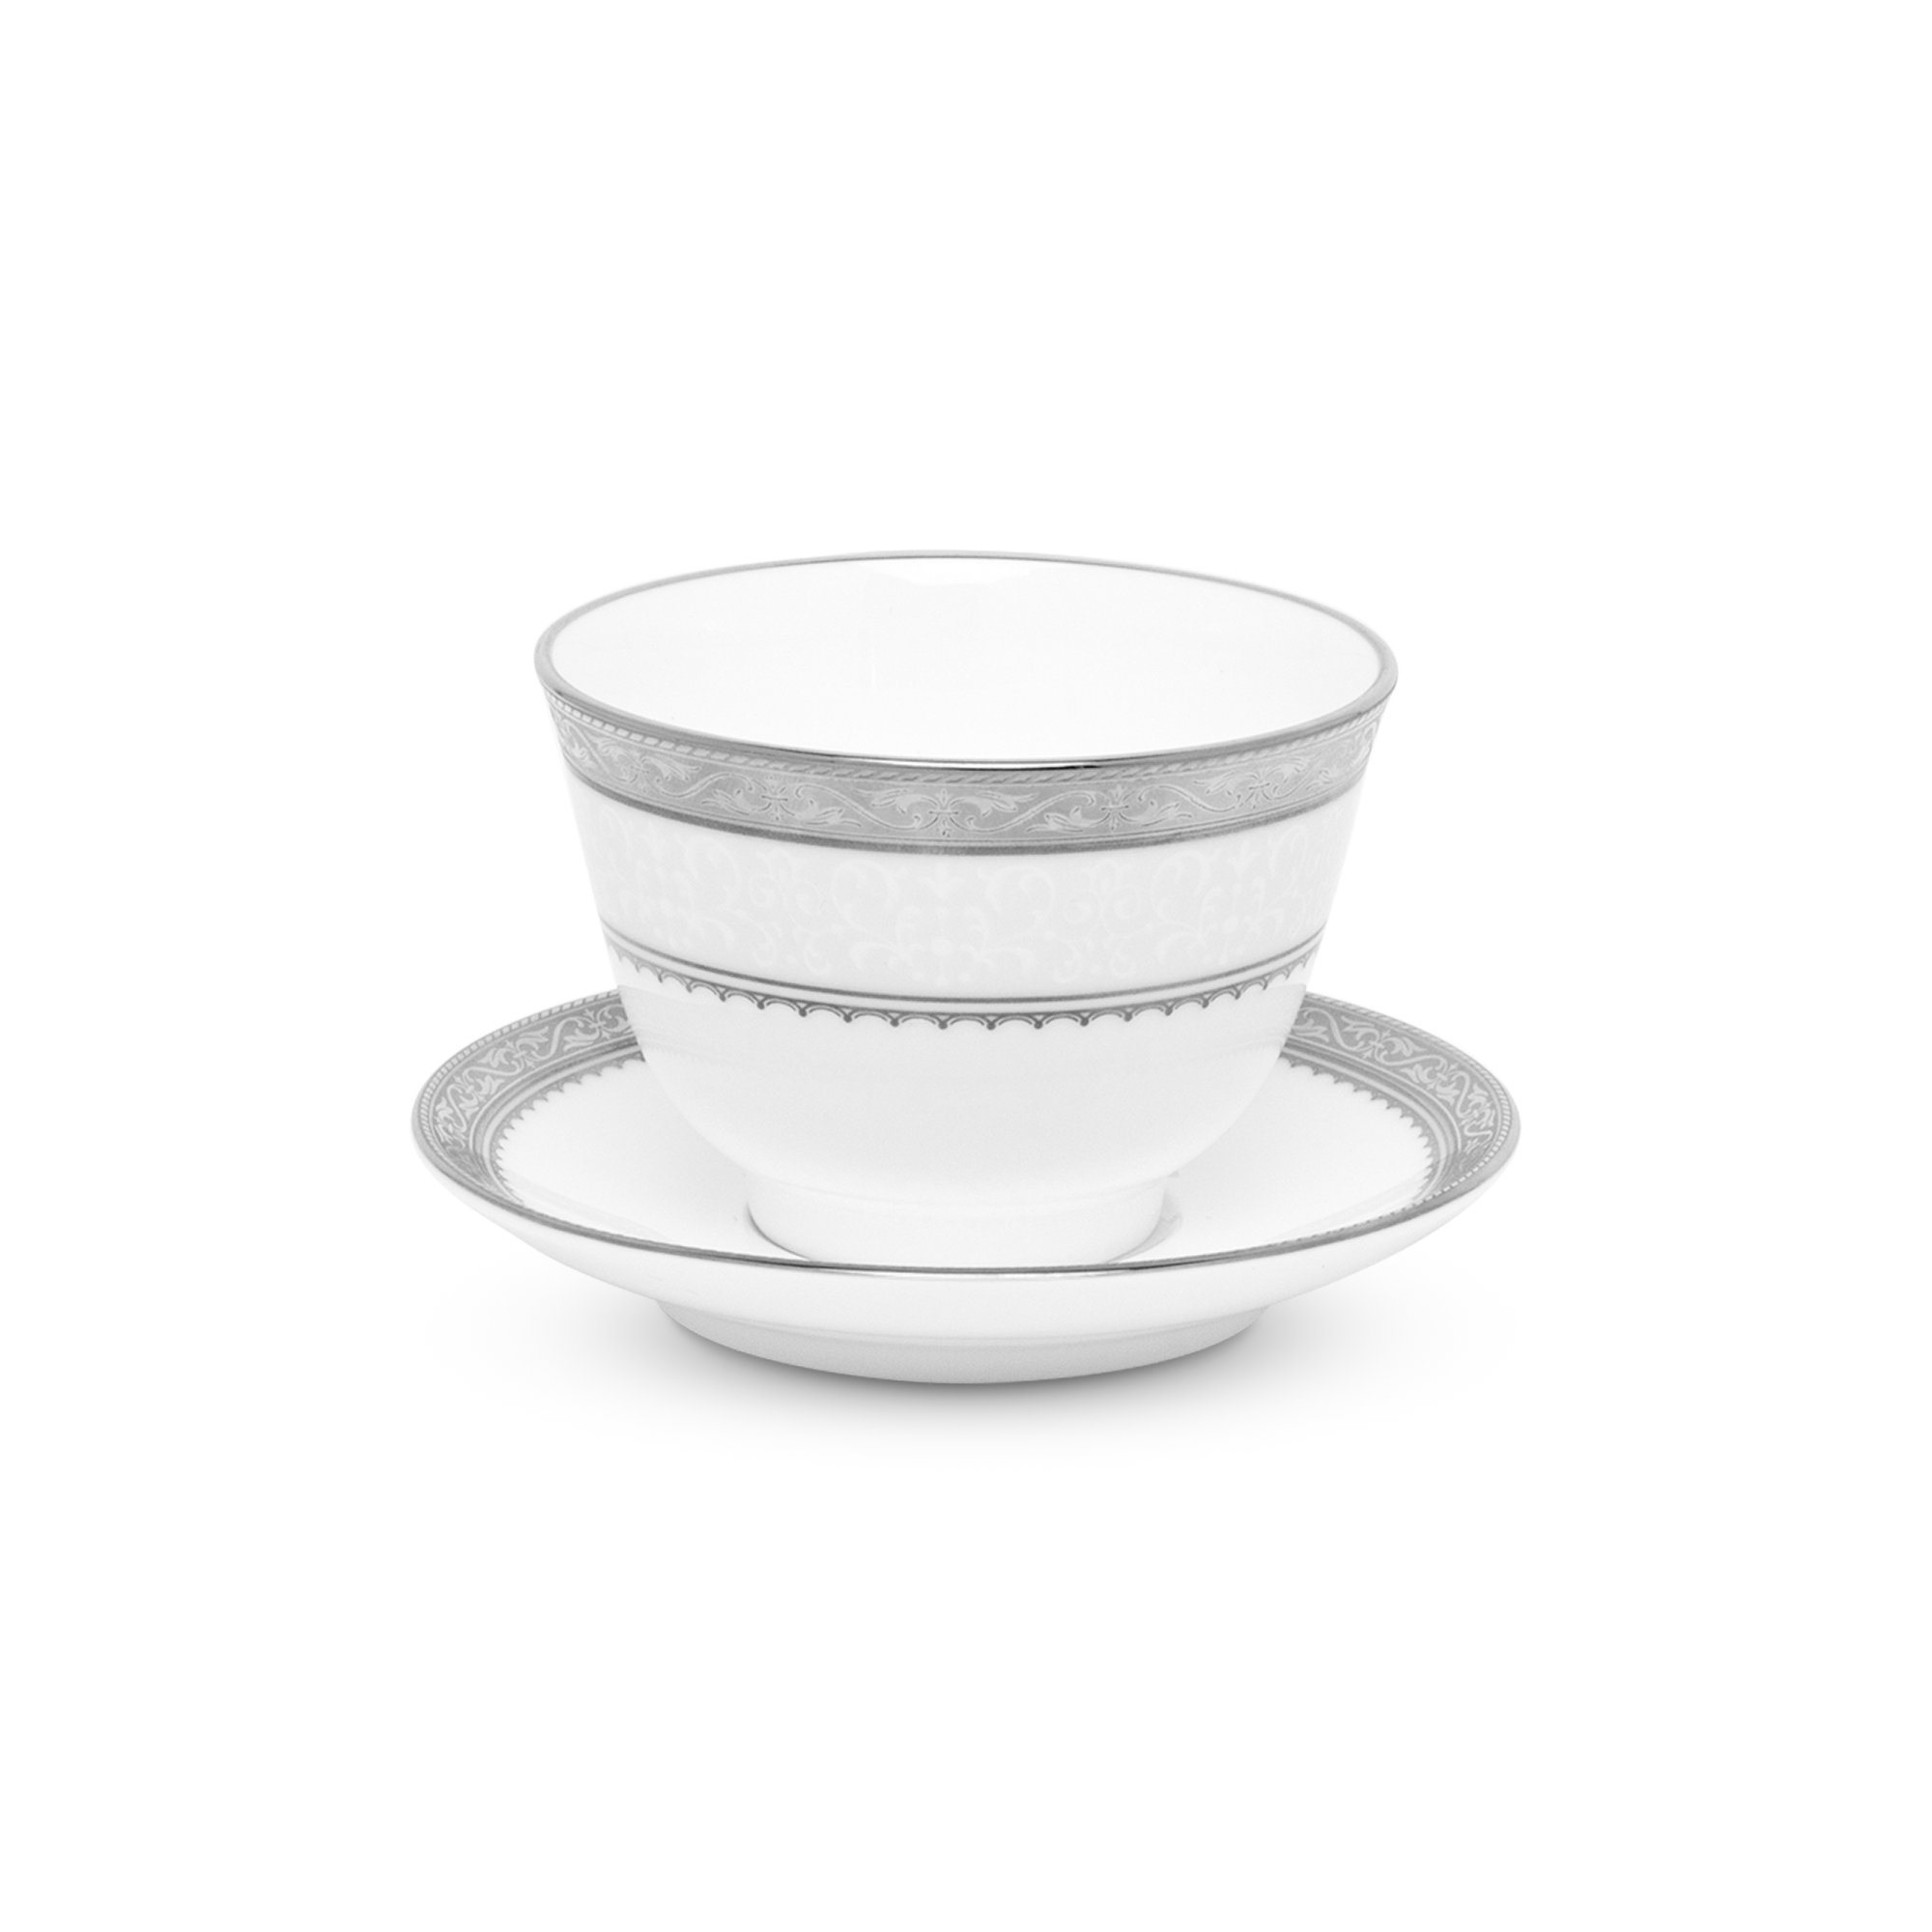  Chén trà (tách trà) Châu Á (không quai cầm) kèm đĩa lót dung tích 145ml sứ xương | Odessa Platinum 4875L-T97363 